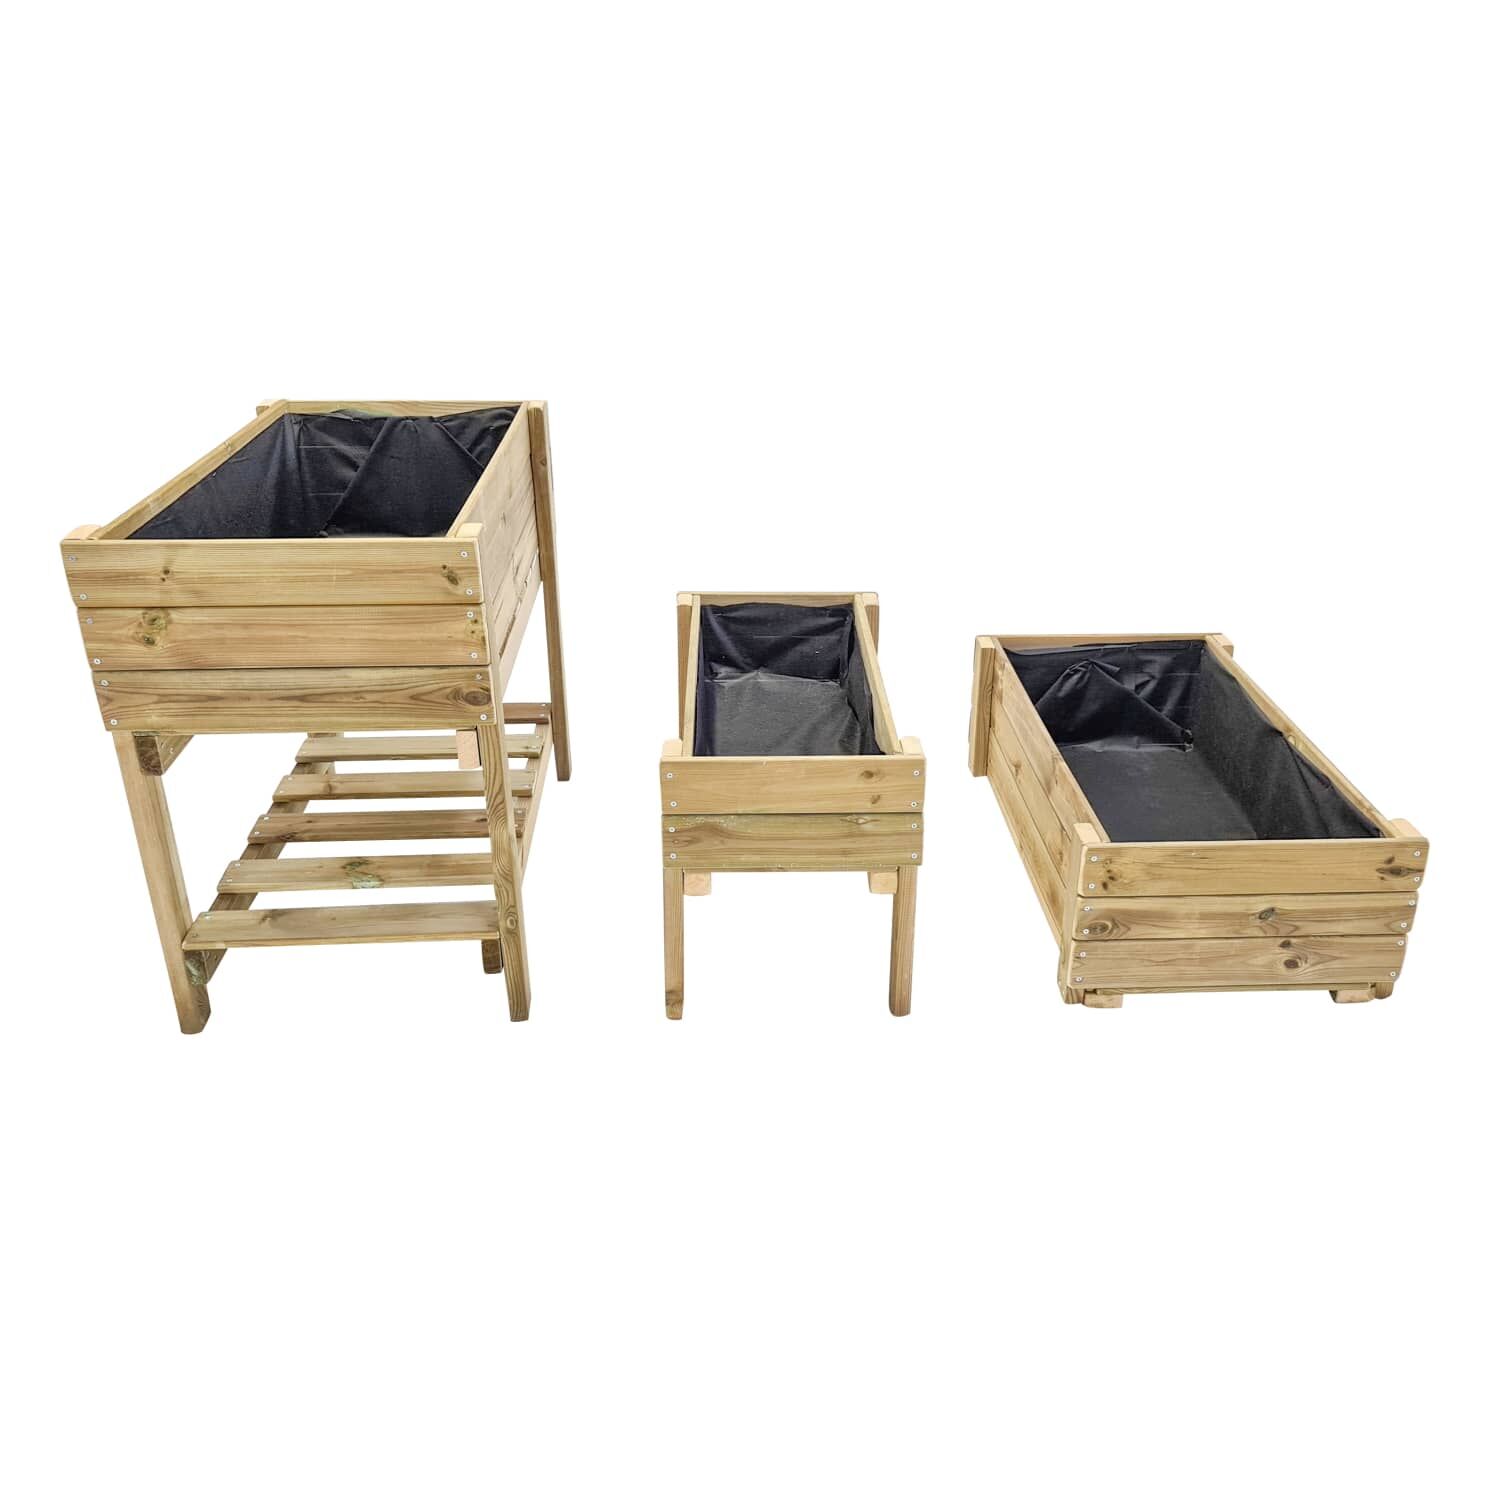 Pack de 3 mesas de cultivo de madeira MASGAMES FORTIS